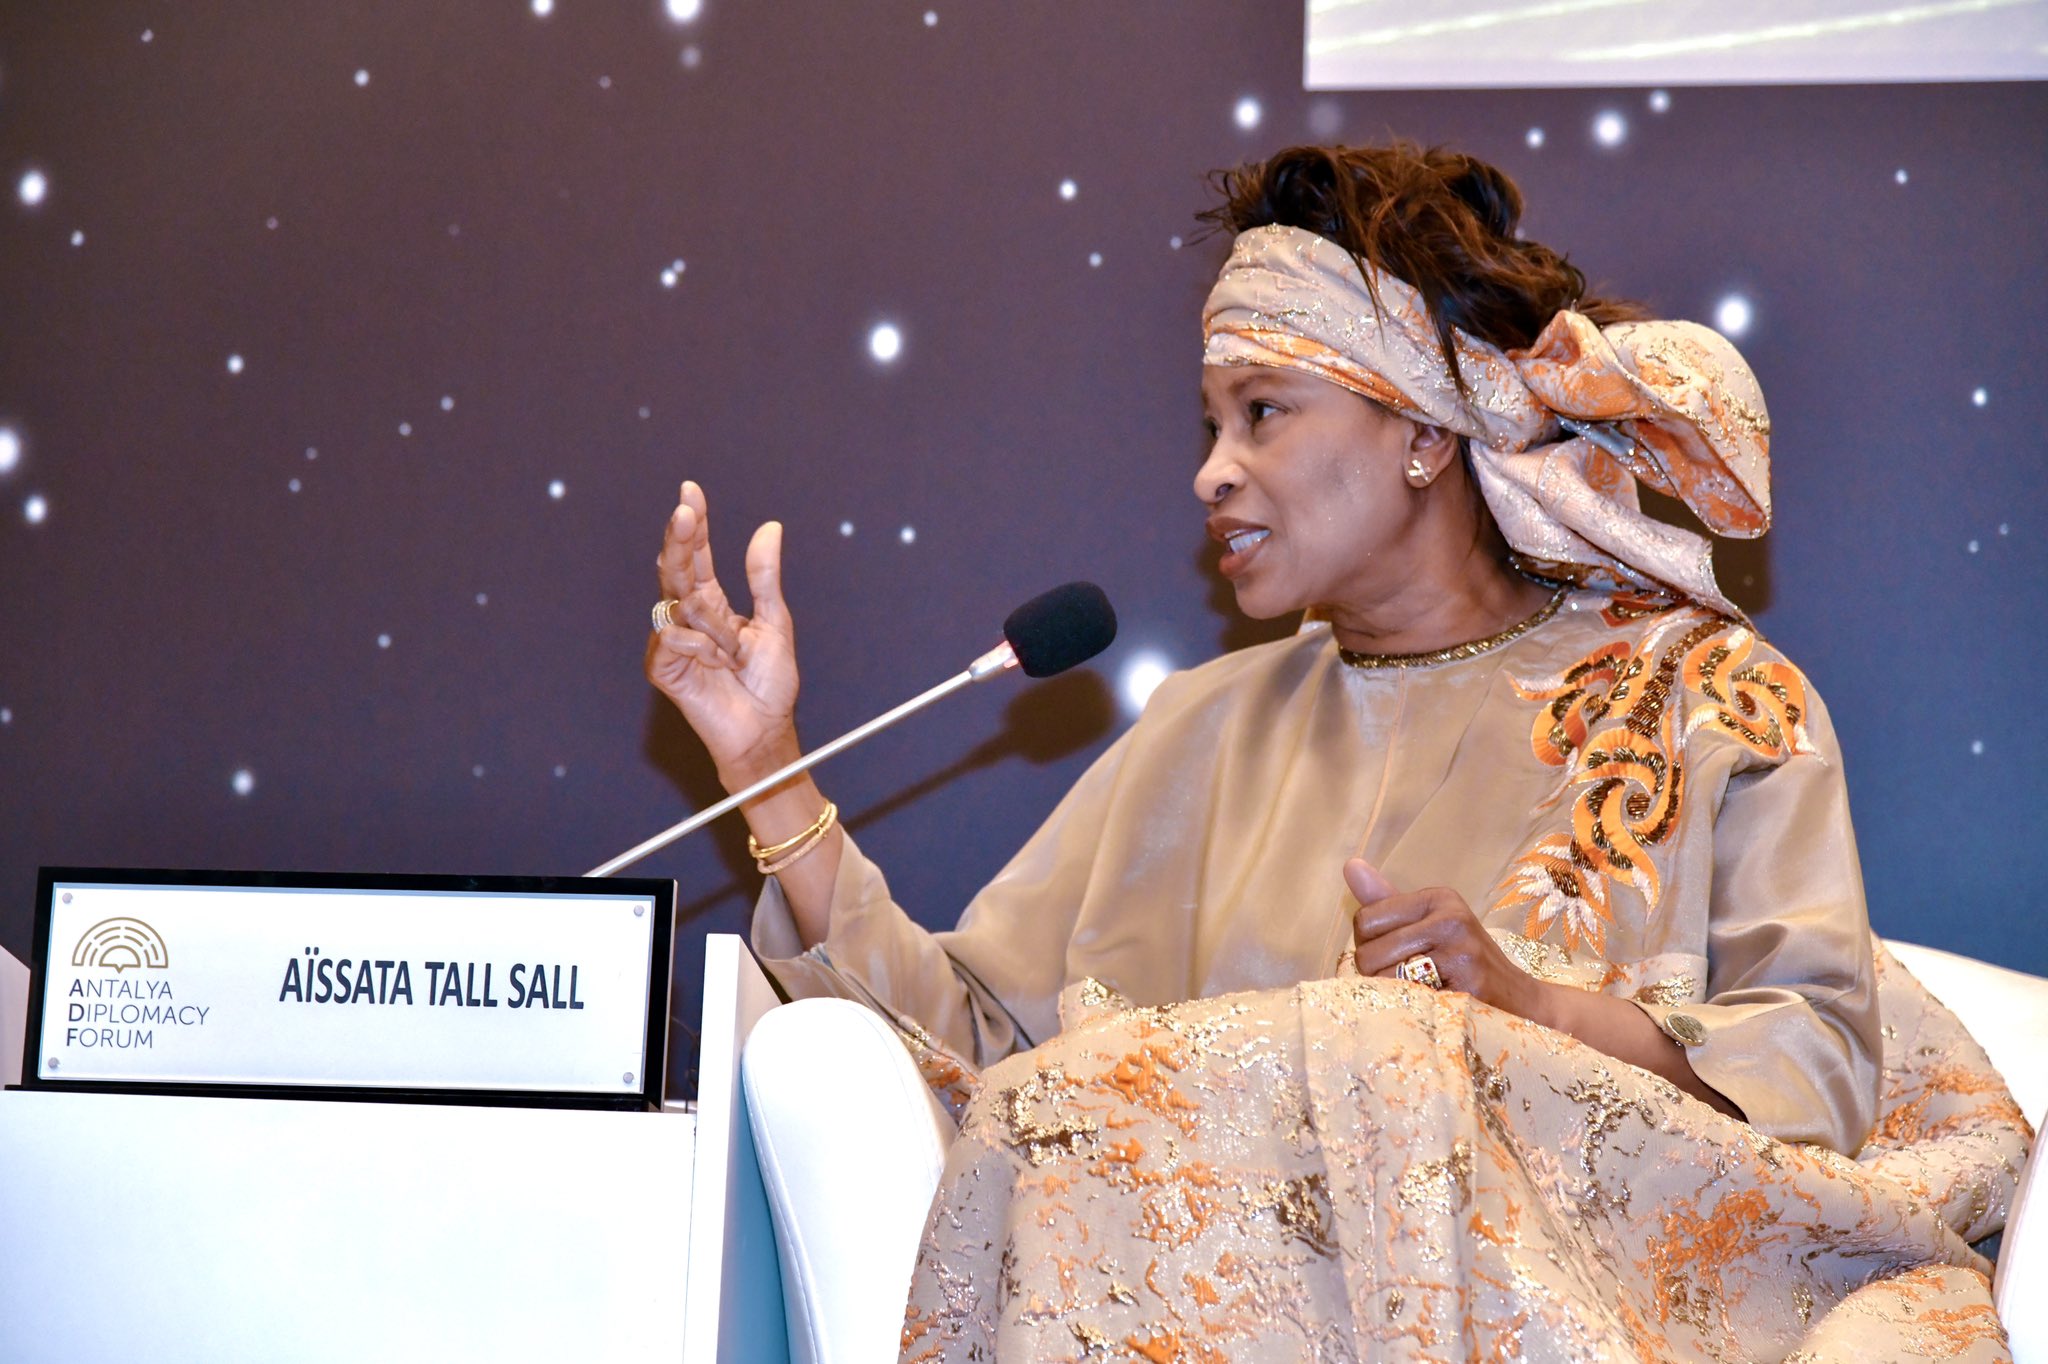 Aissata Tall Sall - Ministre des Affaires Etrangères et des Sénégalais de l'Extérieur